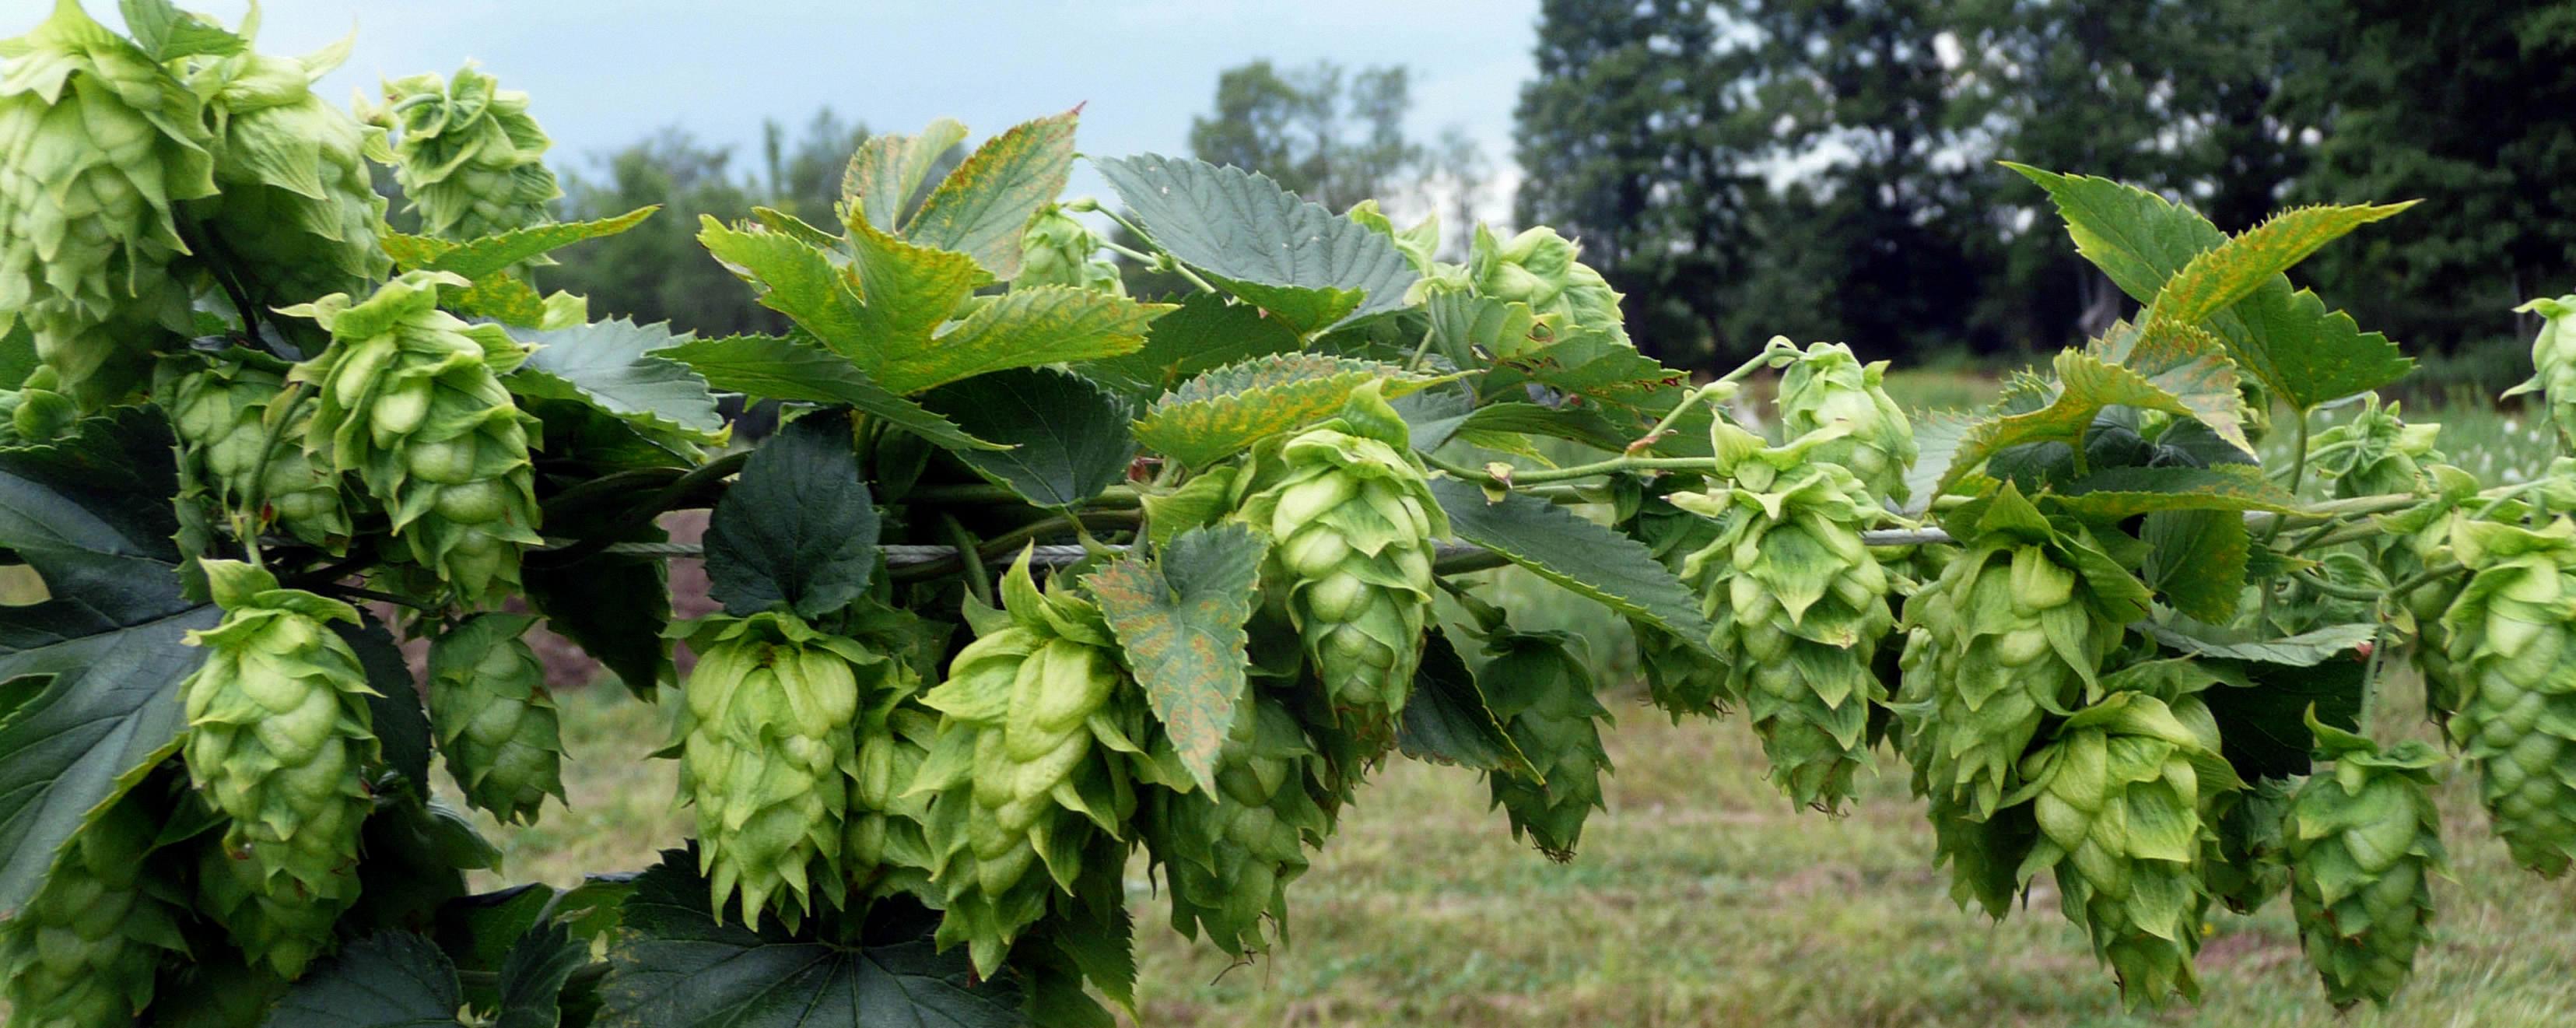 growing hops in ohio